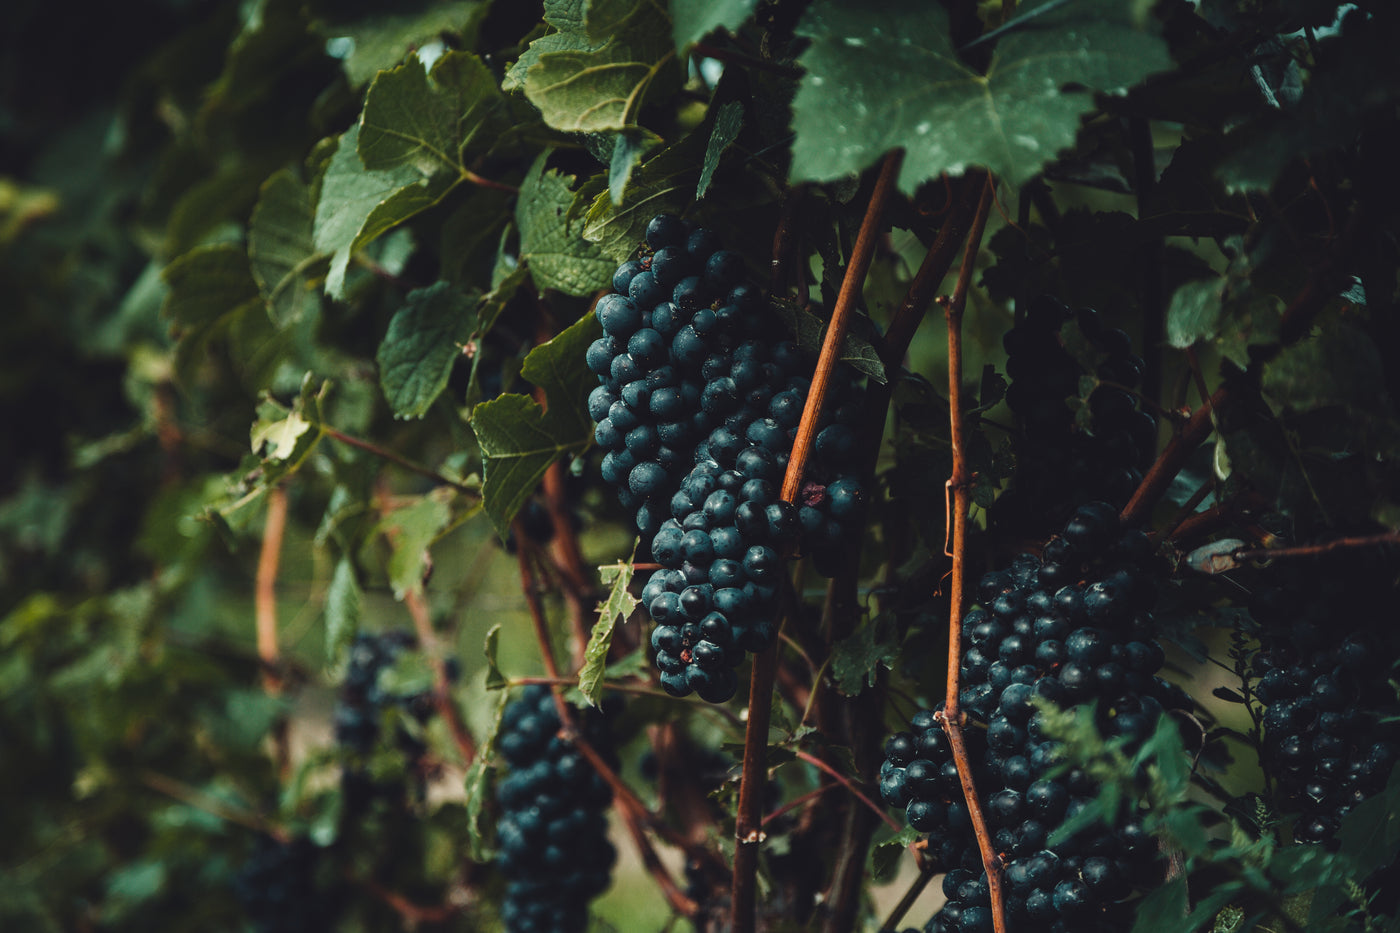 Druiven trossen van biologische wijn.Passie voor duurzame wijn en bio wijn. Duurzame bio producent, bio wijn biologische wijn. Duurzame wijnen, onze best verkopende selectie. Biologische bio wijn. Passie voor duurzame wijn.